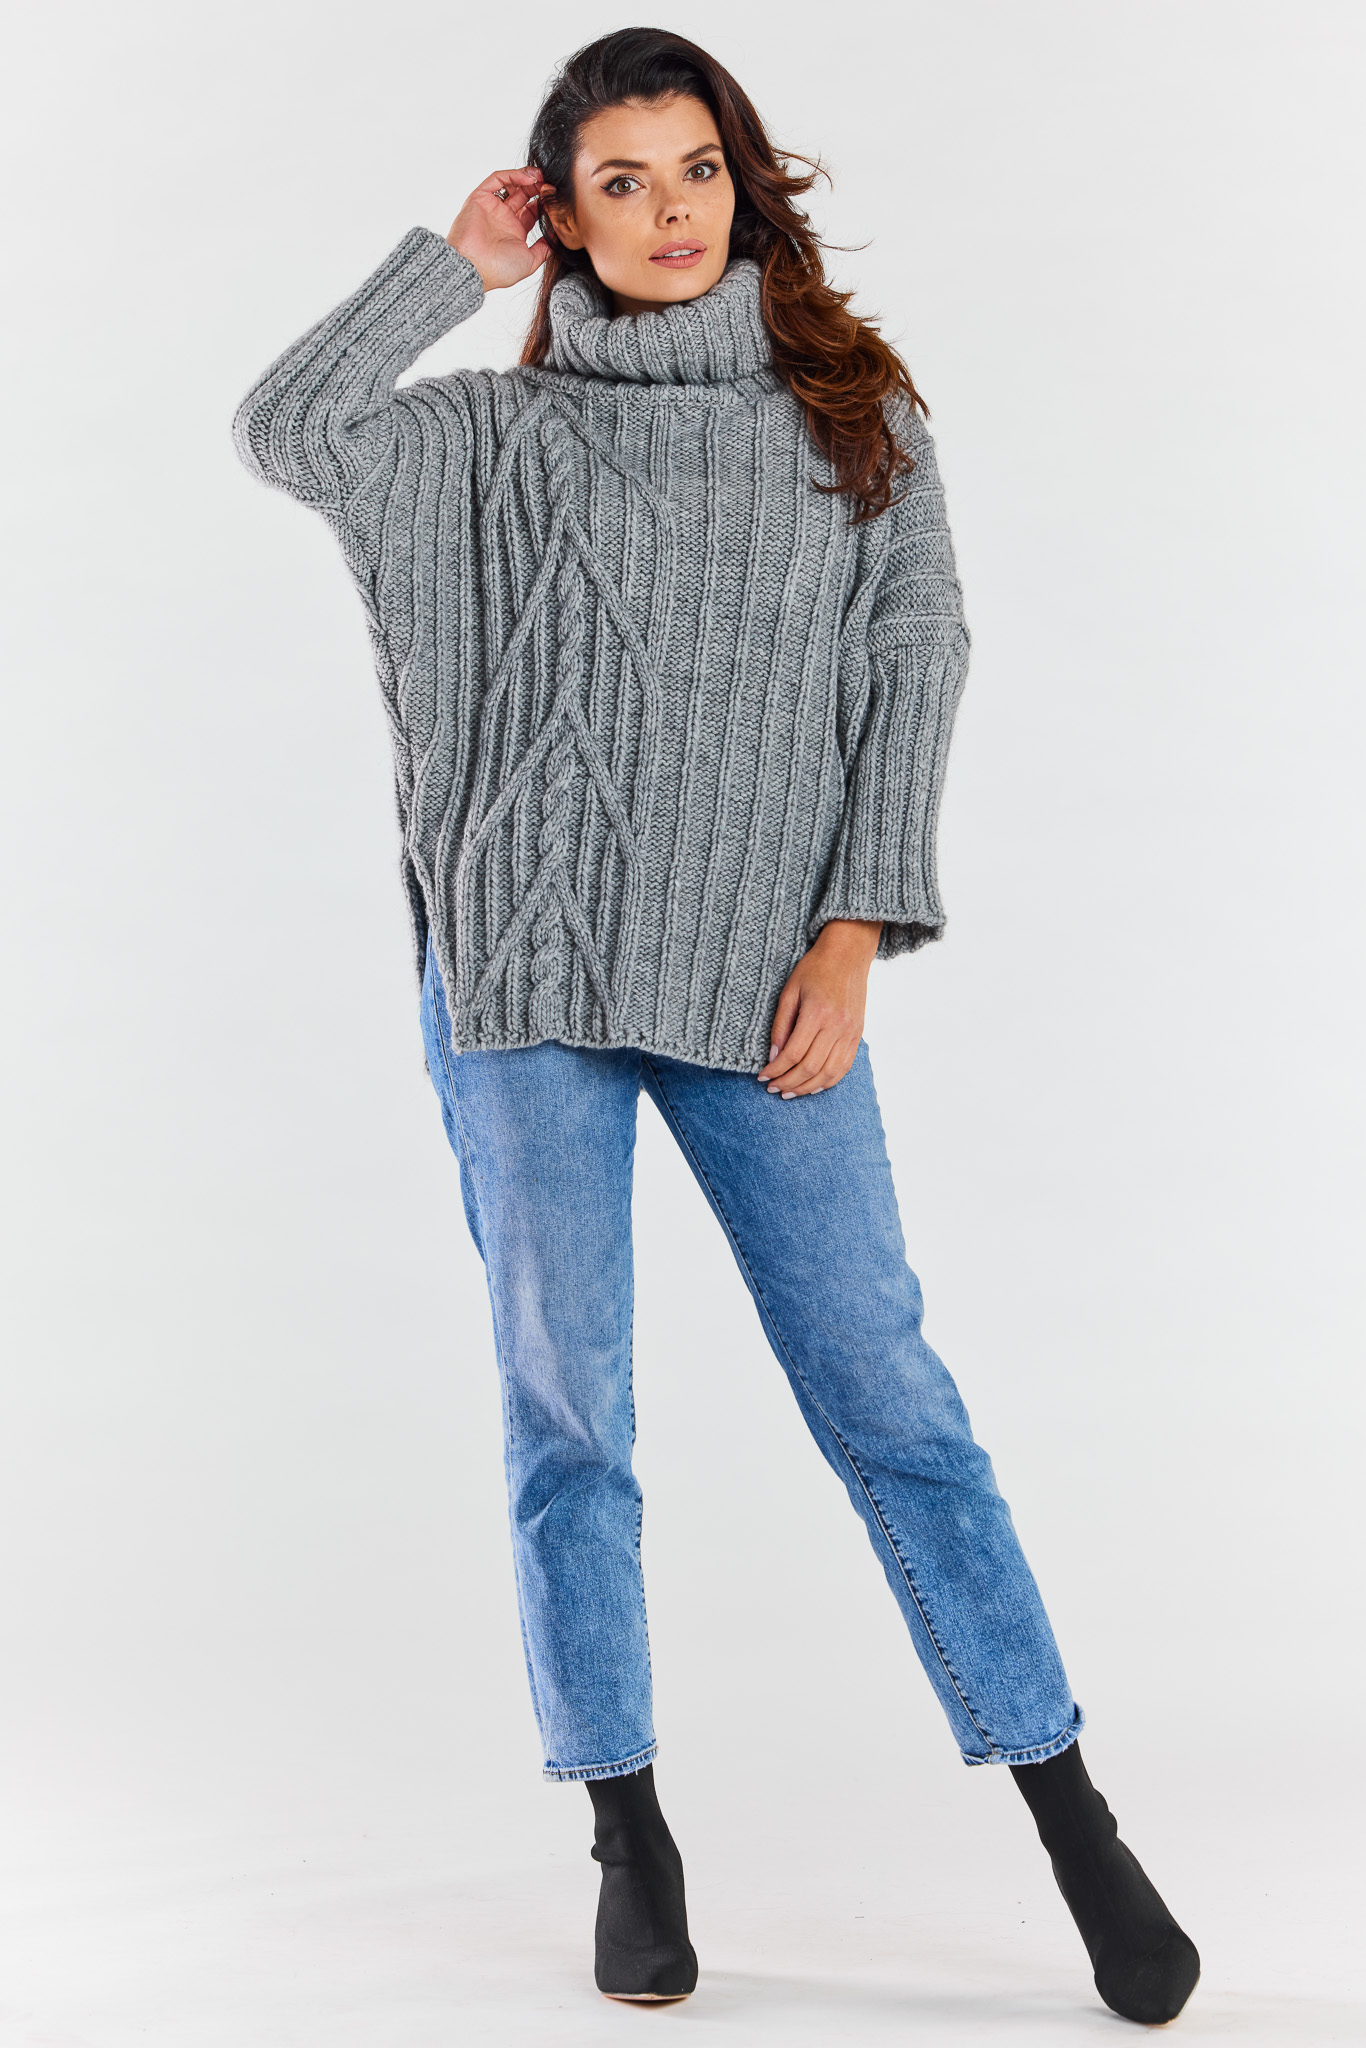 Awama Woman's Sweater A477